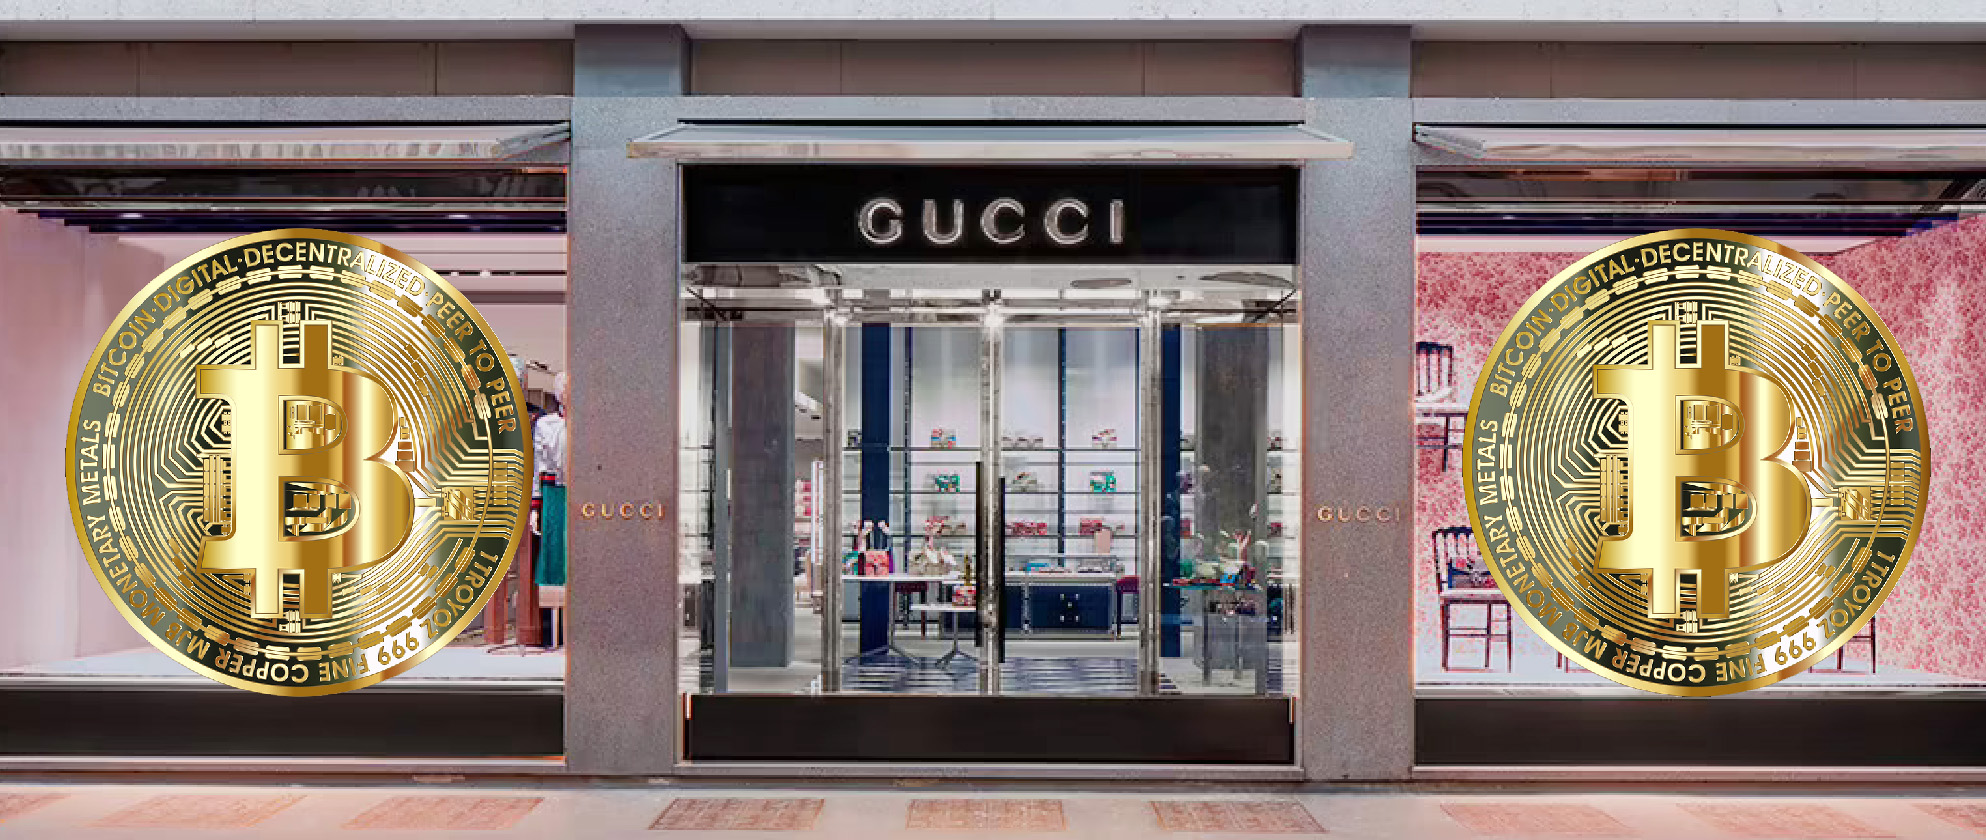 Gucci криптографиялық өнер маркетплейс-галереясын ашты 